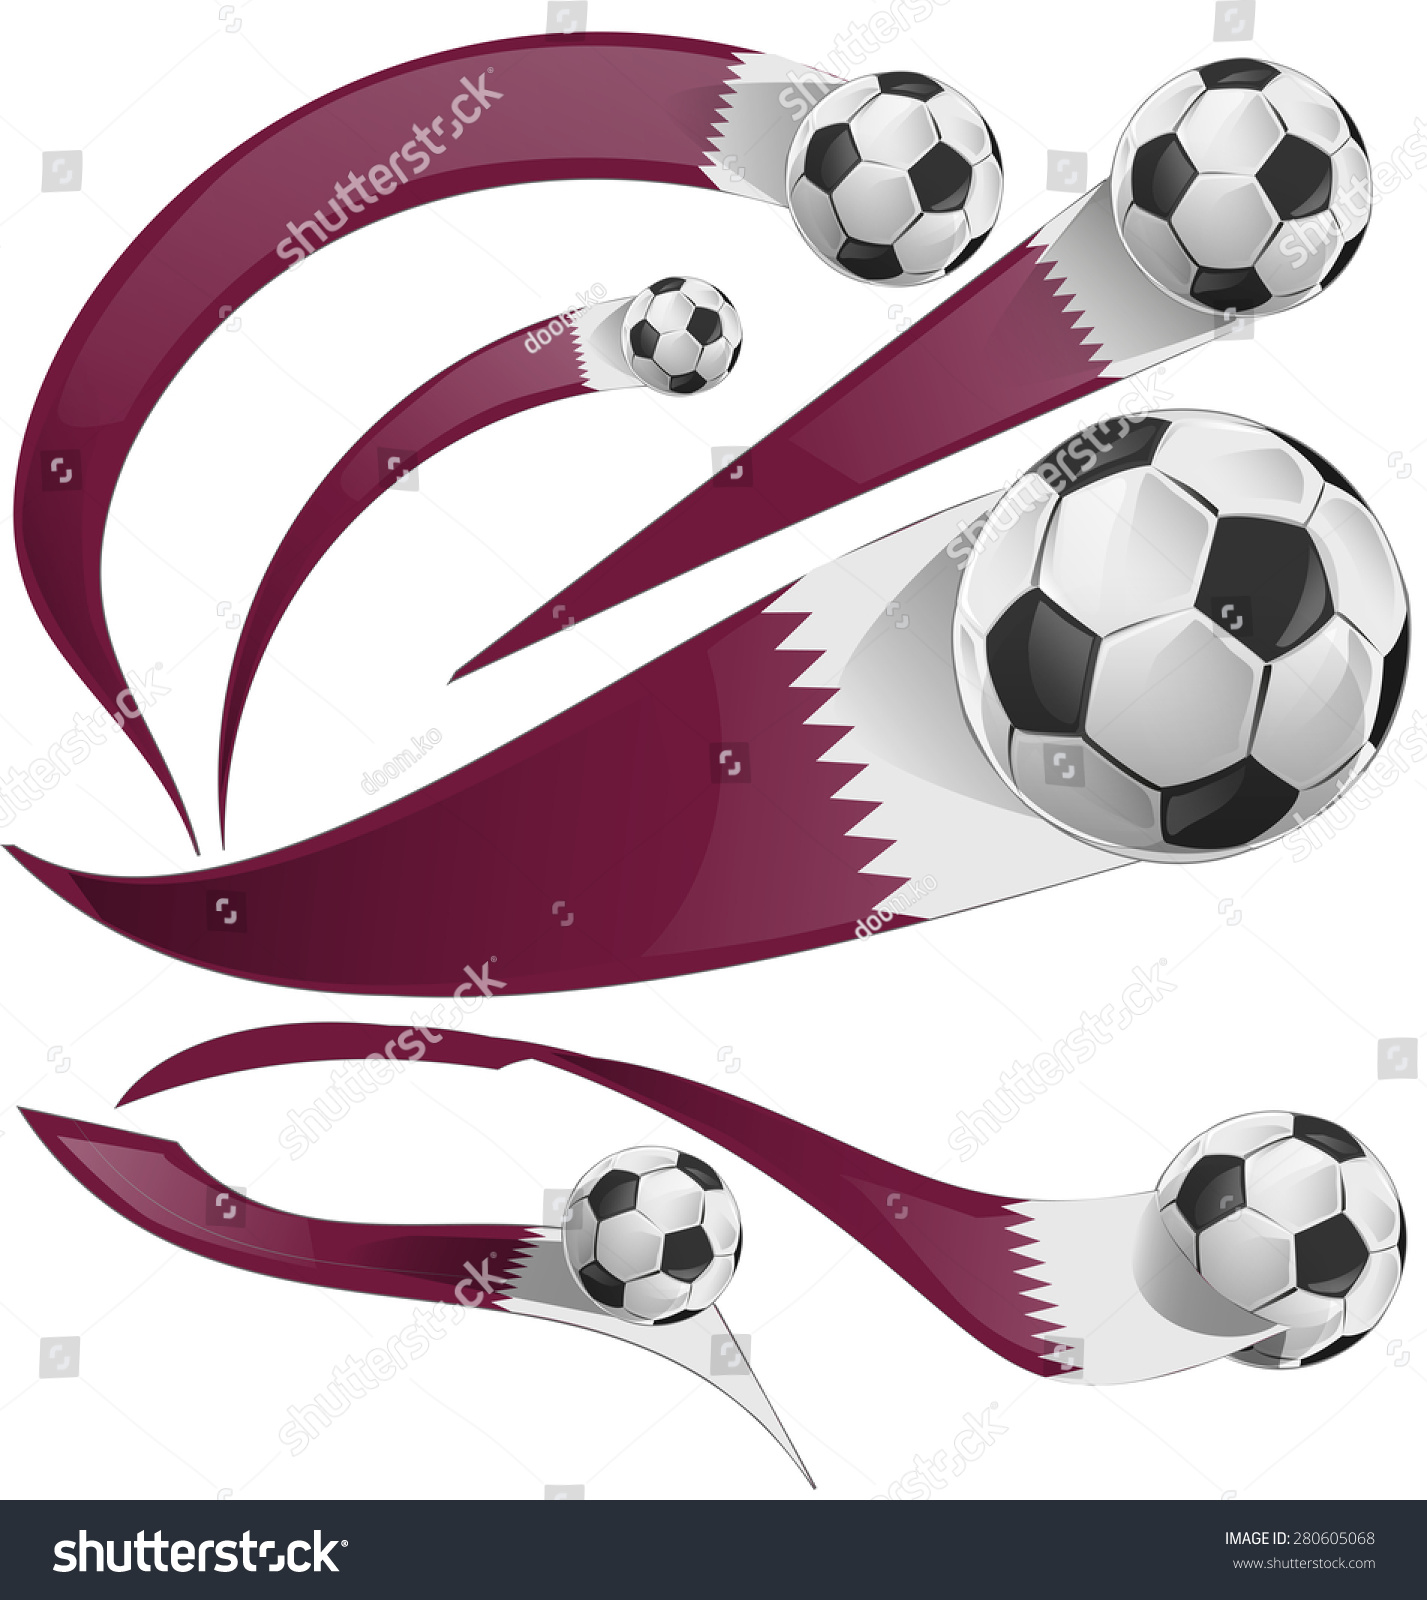 Qatar Flag Set Soccer Ball Isolated Stock Vector 280605068 - Shutterstock